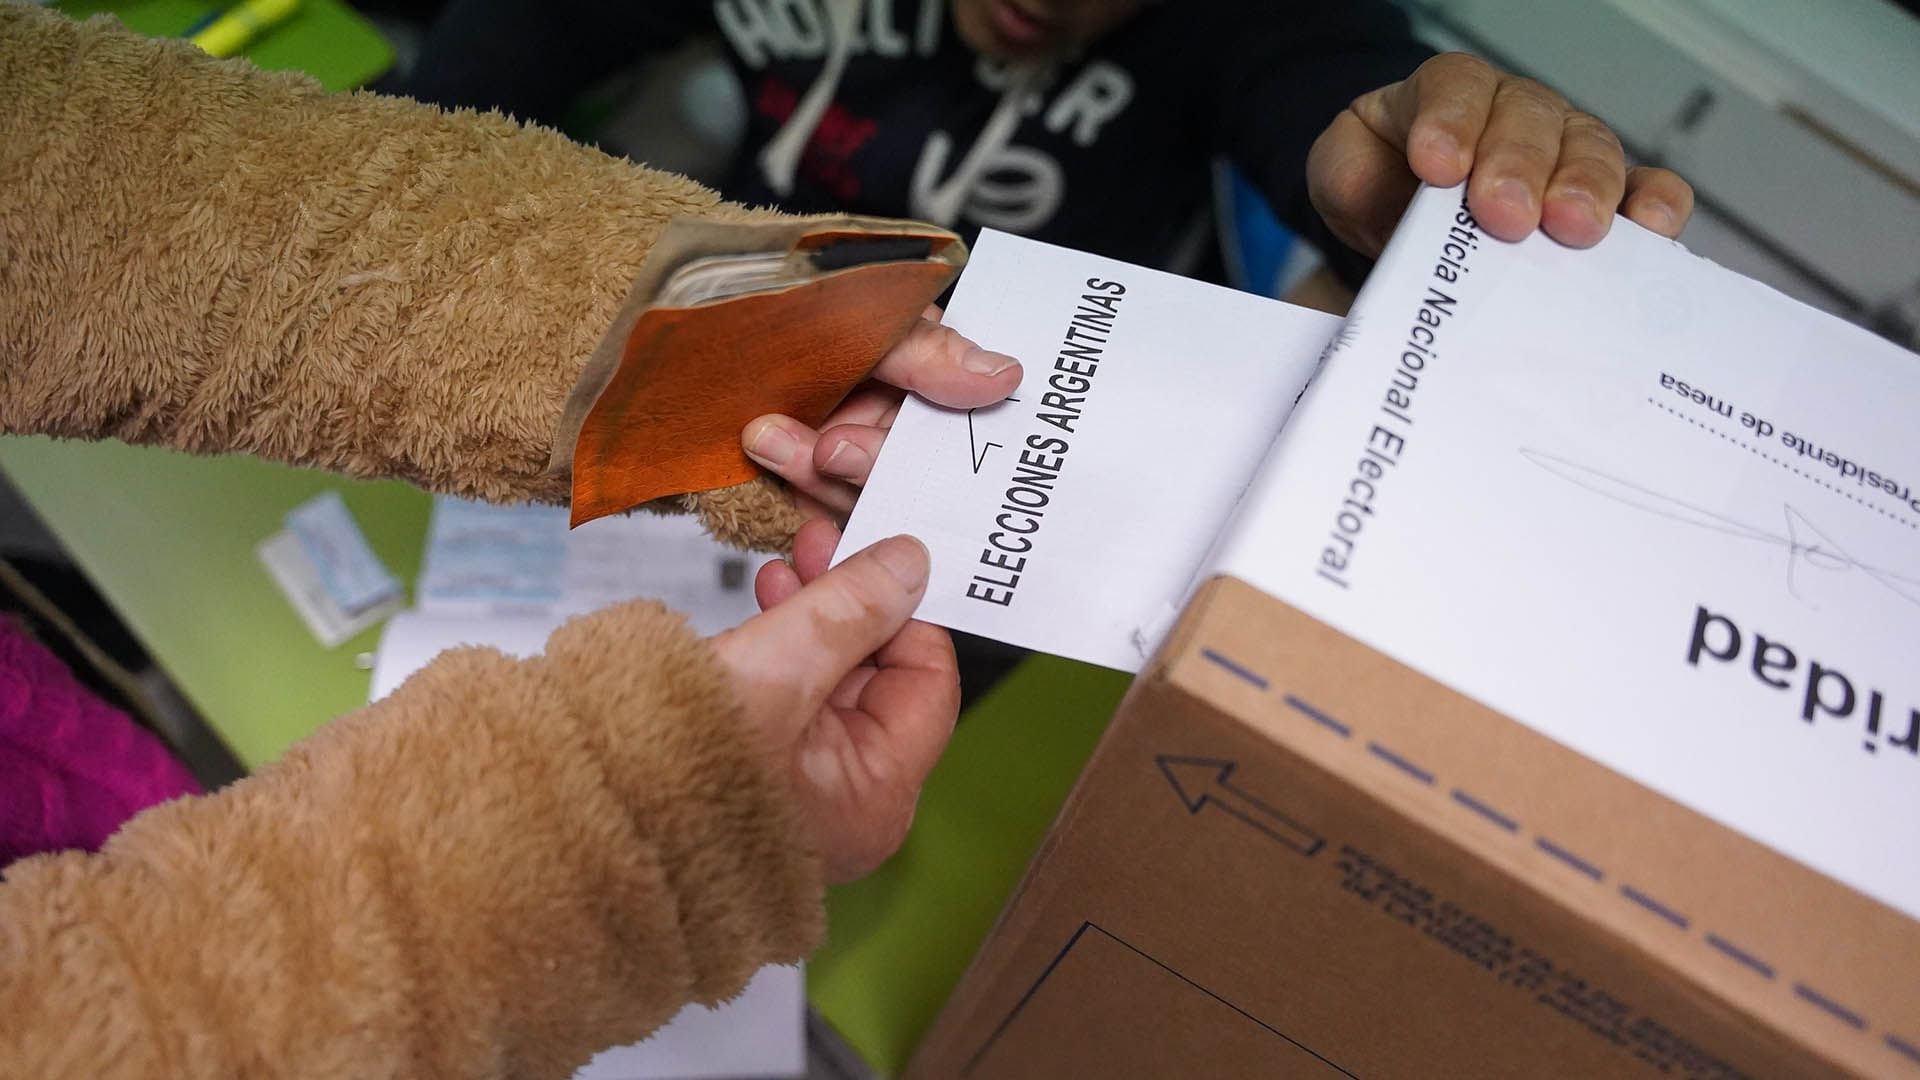 El voto en blanco es considerado como válido. (Foto: Franco Fafasuli)